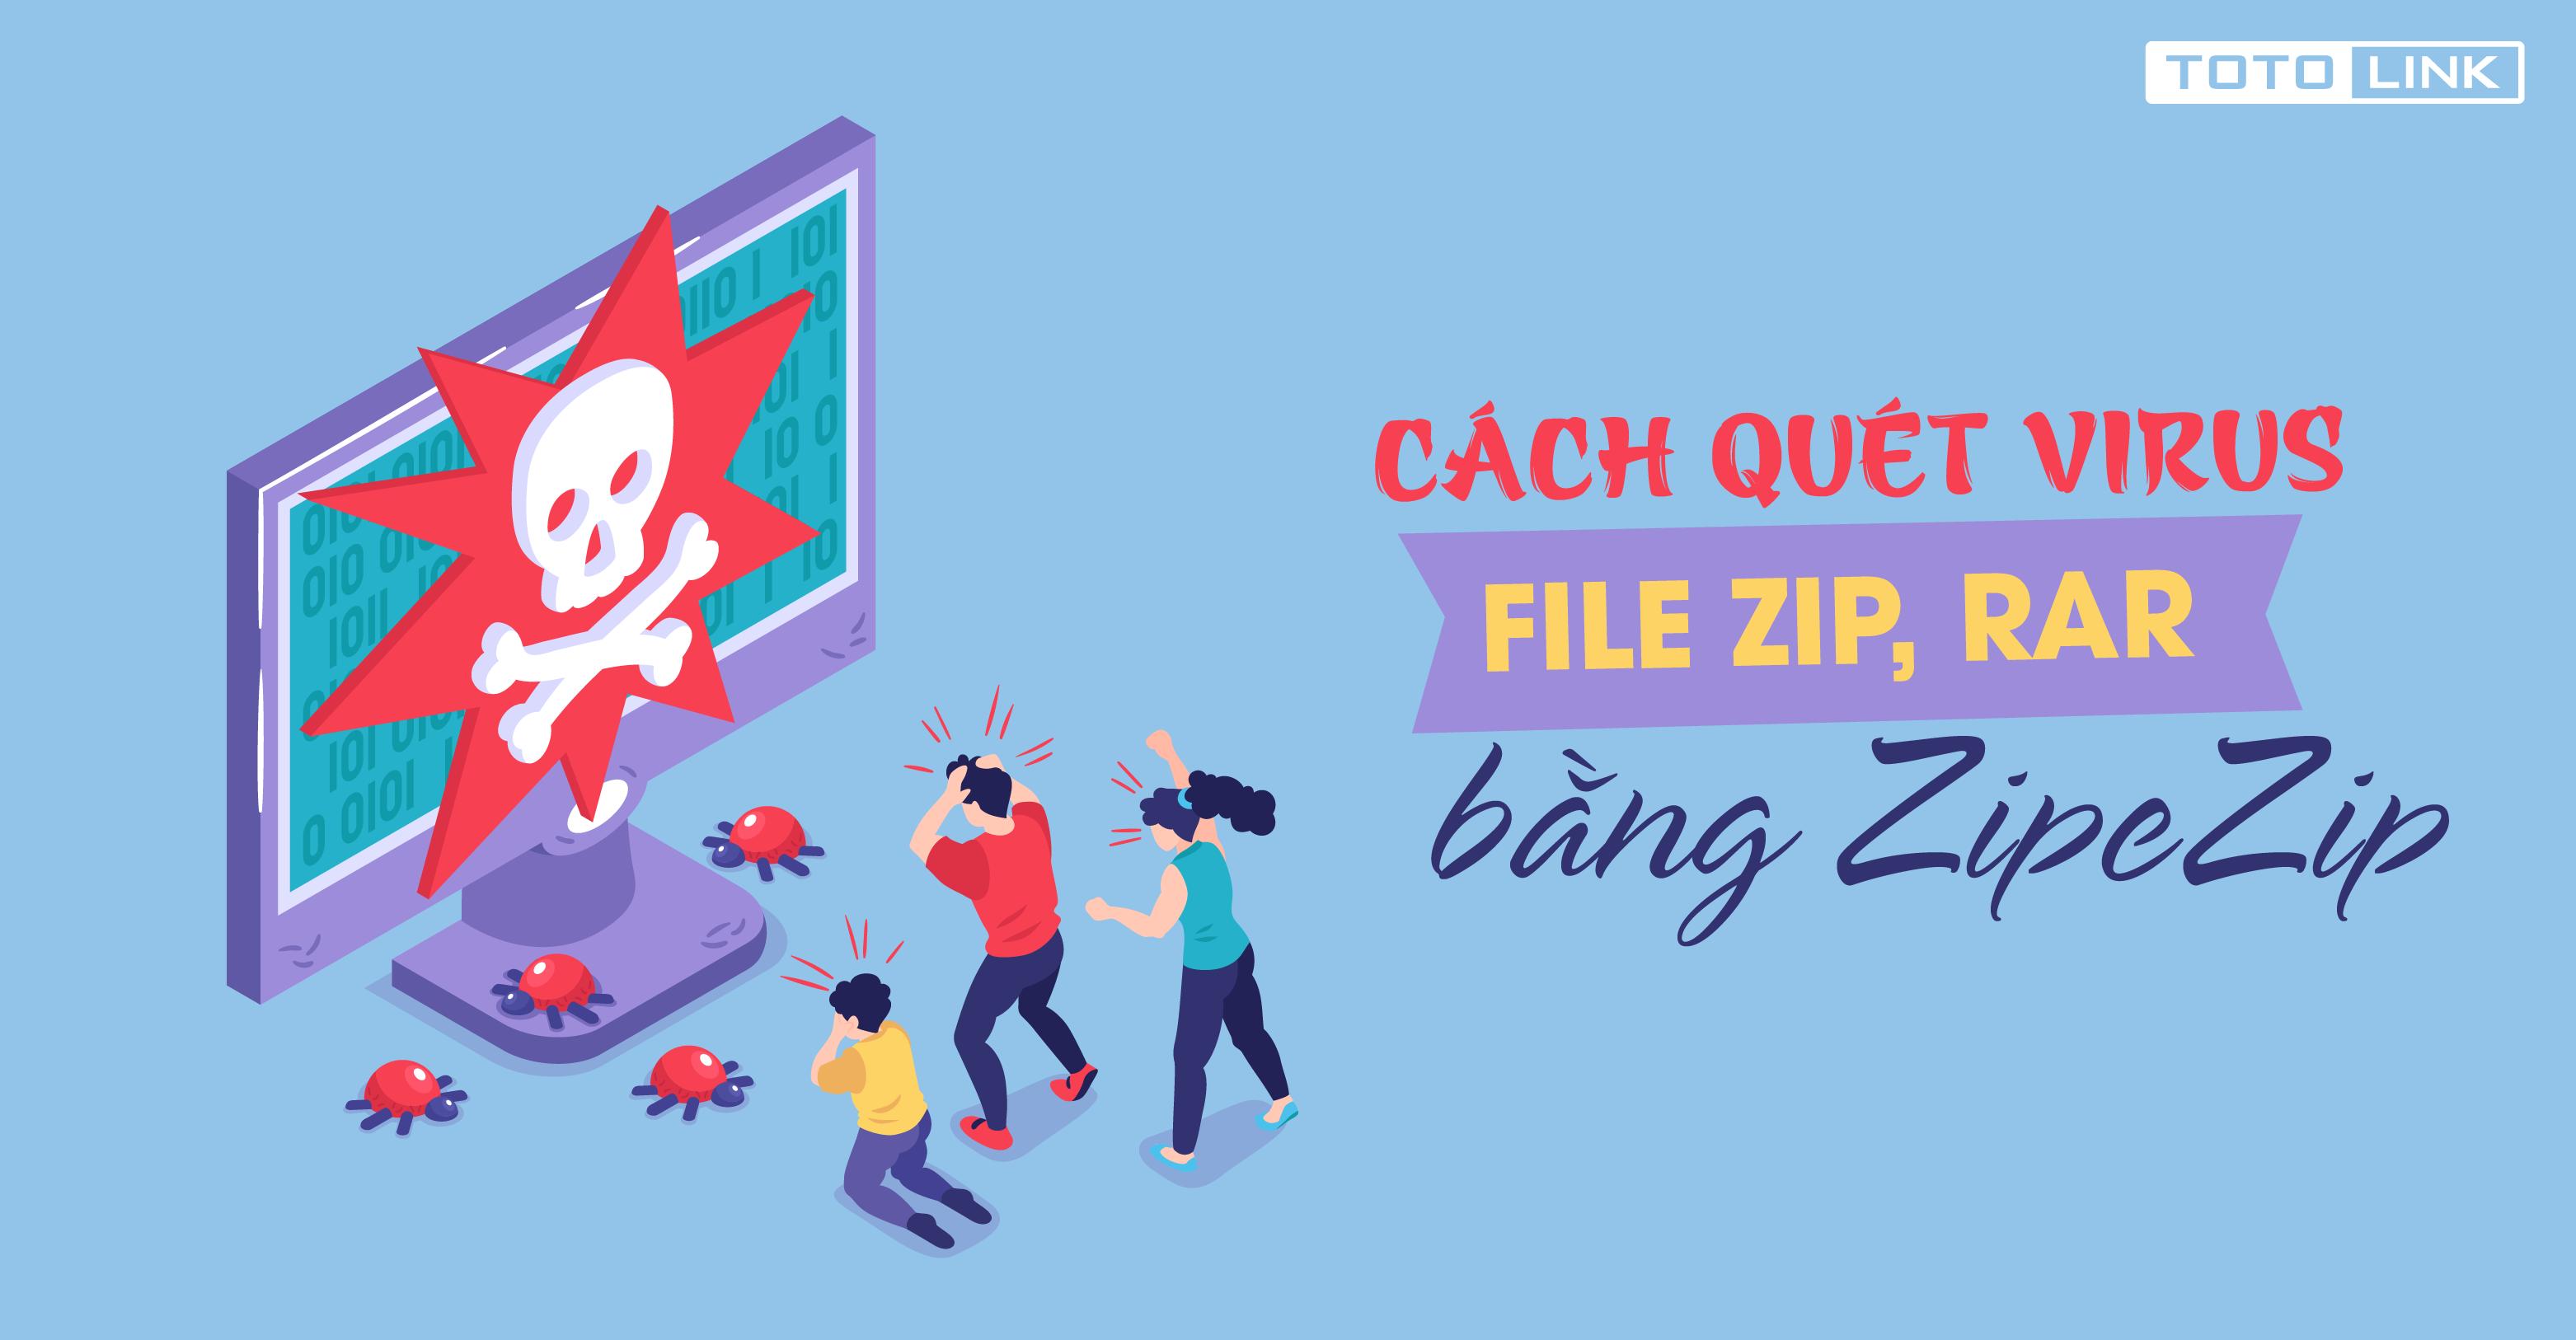 Cách quét virus file ZIP, RAR bằng ZipeZip với 3 bước đơn giản